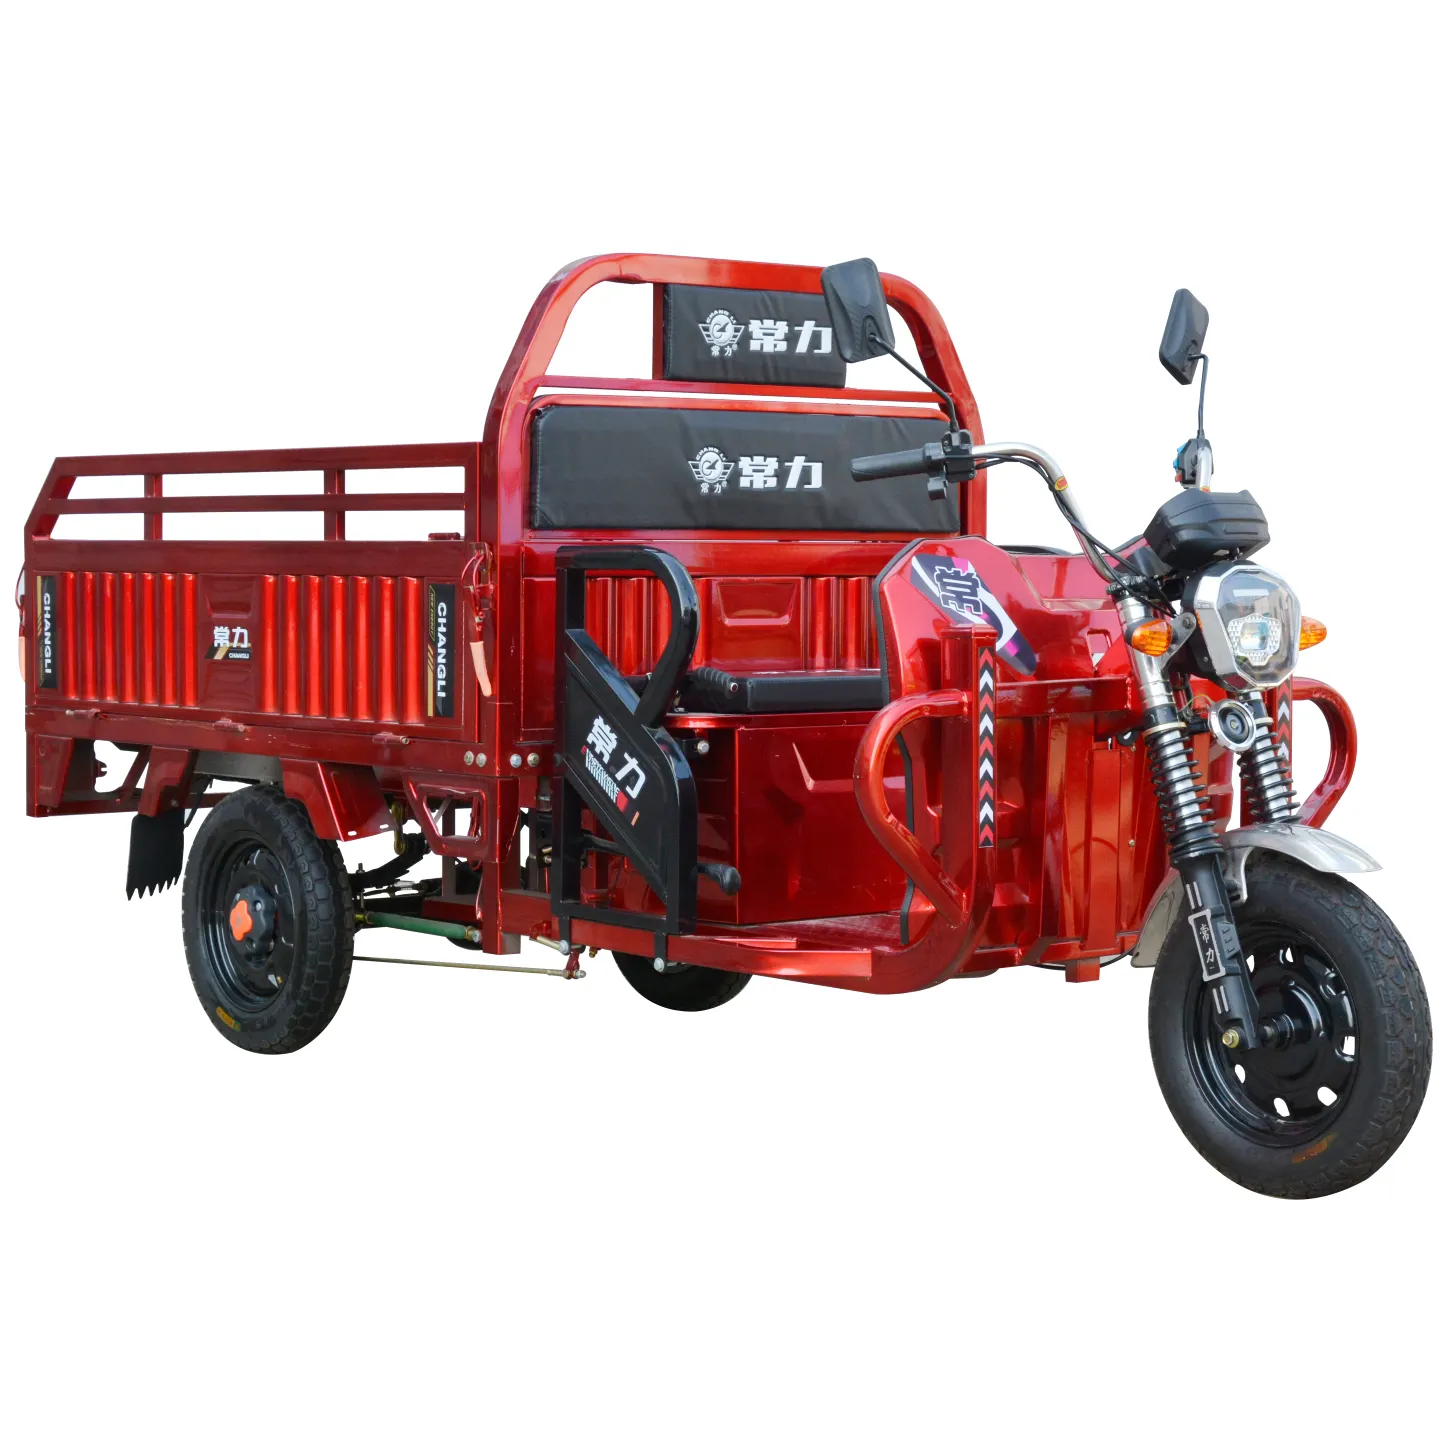 60V 1000W Heavy Duty 5 Roues Cargo Adultes Motos Tricycles Électriques Électriques